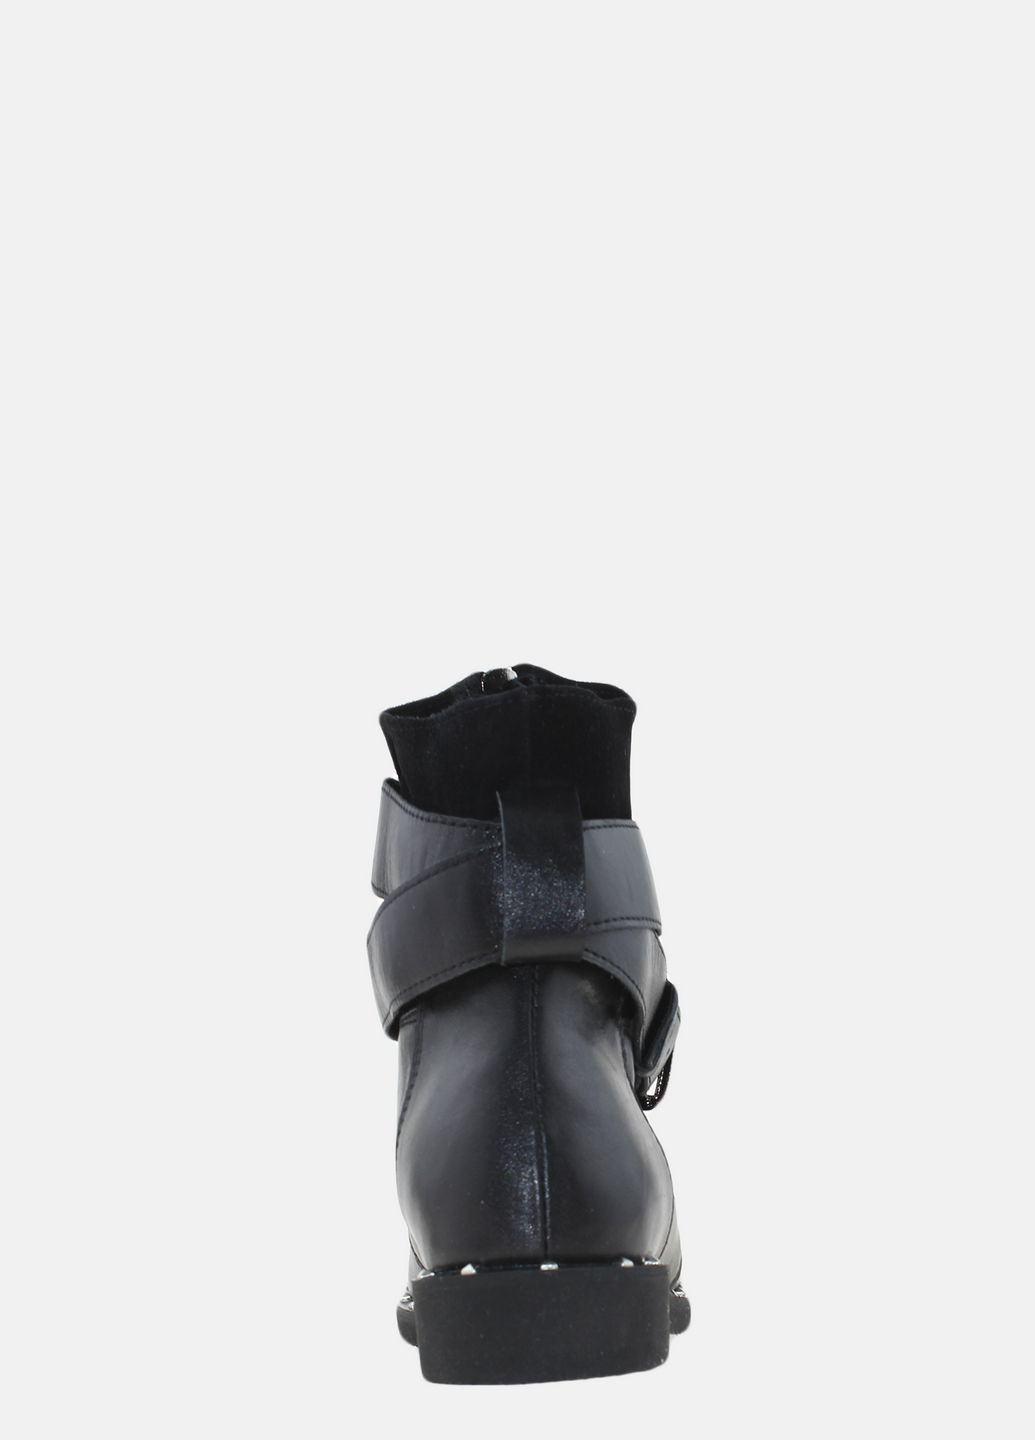 Осенние ботинки r1263 черный Prellesta из натуральной замши